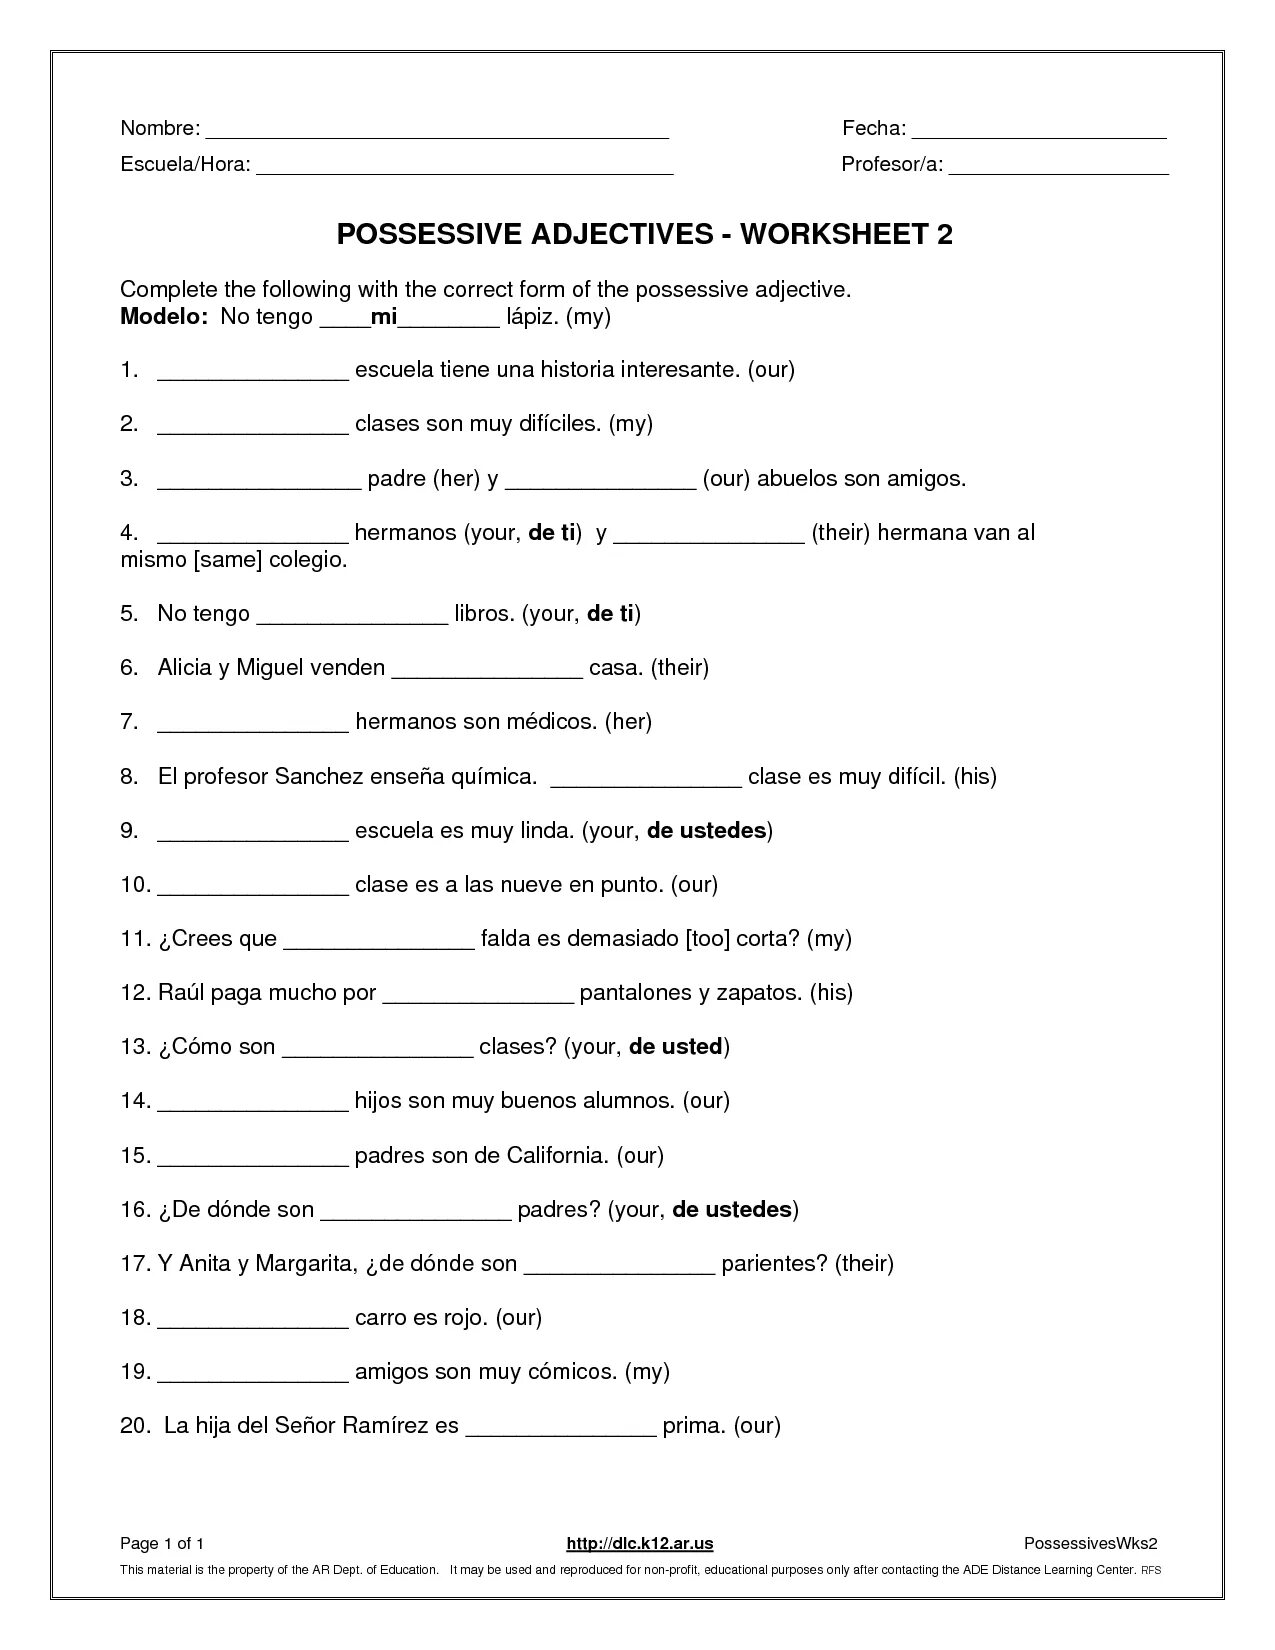 Possessive adjectives Worksheets. Possessive adjectives Worksheet a2. Possessive Worksheets. Possessive pronouns Worksheets. Possessive adjectives worksheet